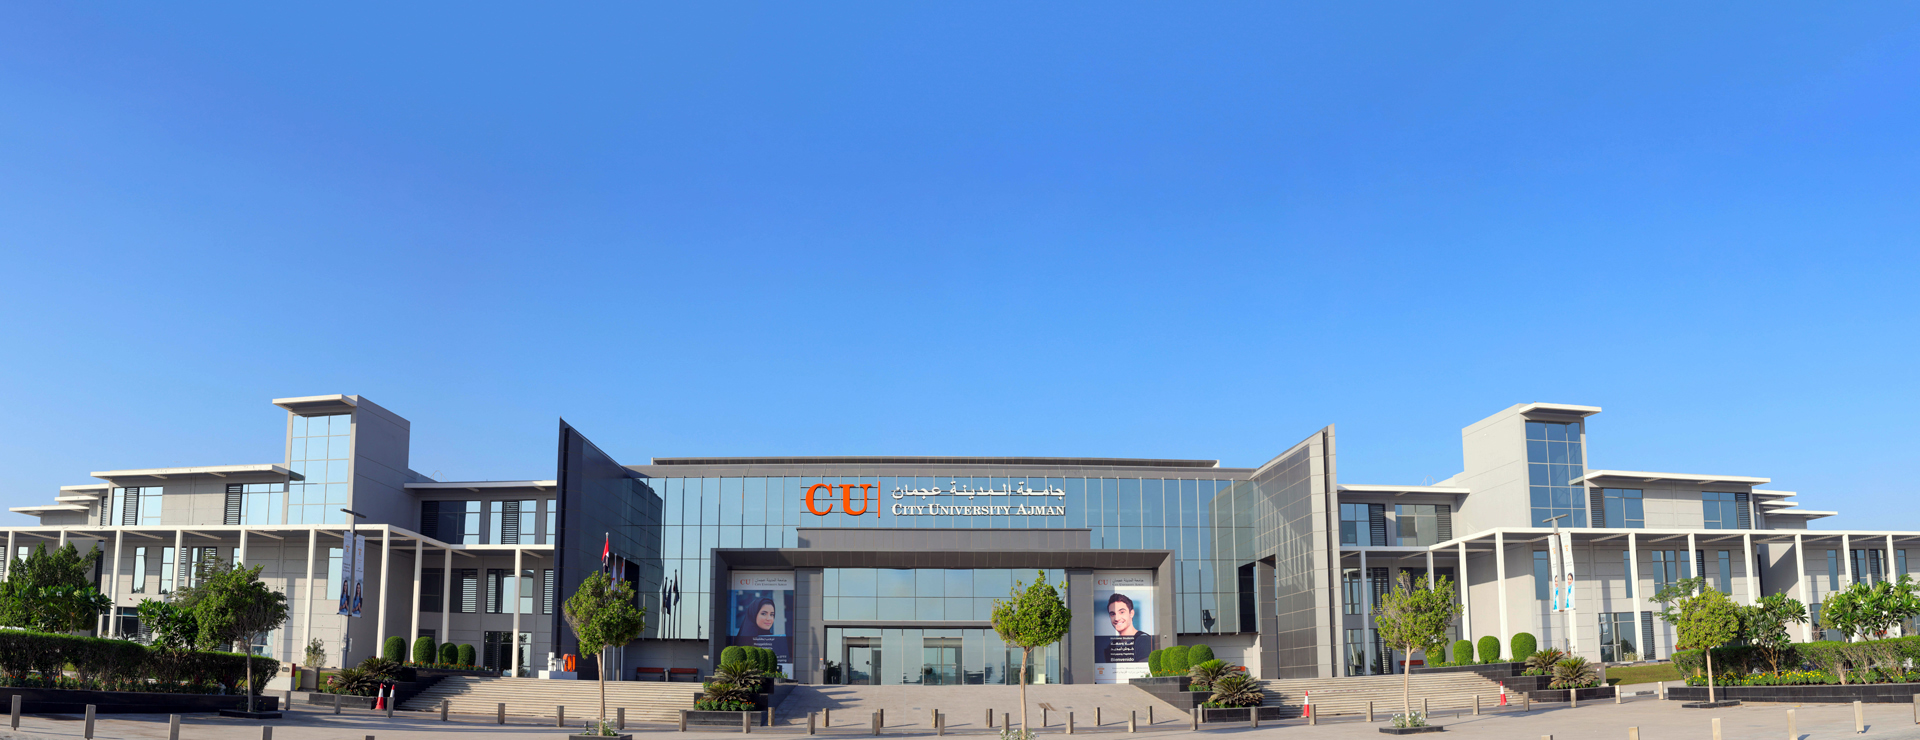 جامعة المدينة عجمان تحتفل بآخر إنجاز لها يكسب QS 4 نجوم